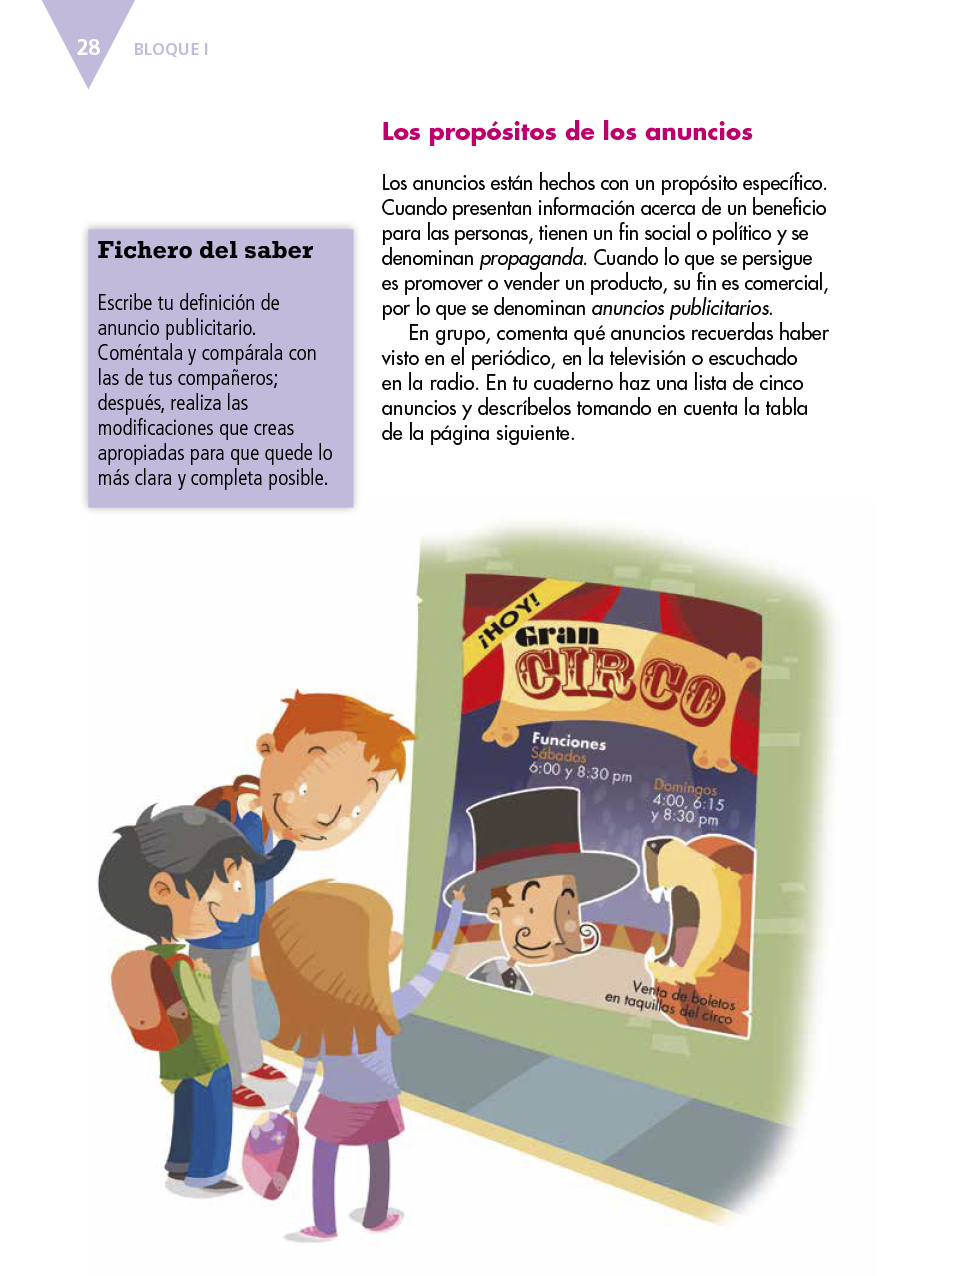 Español quinto grado 2017-2018 - Página 28 de 177 - Libros de Texto Online